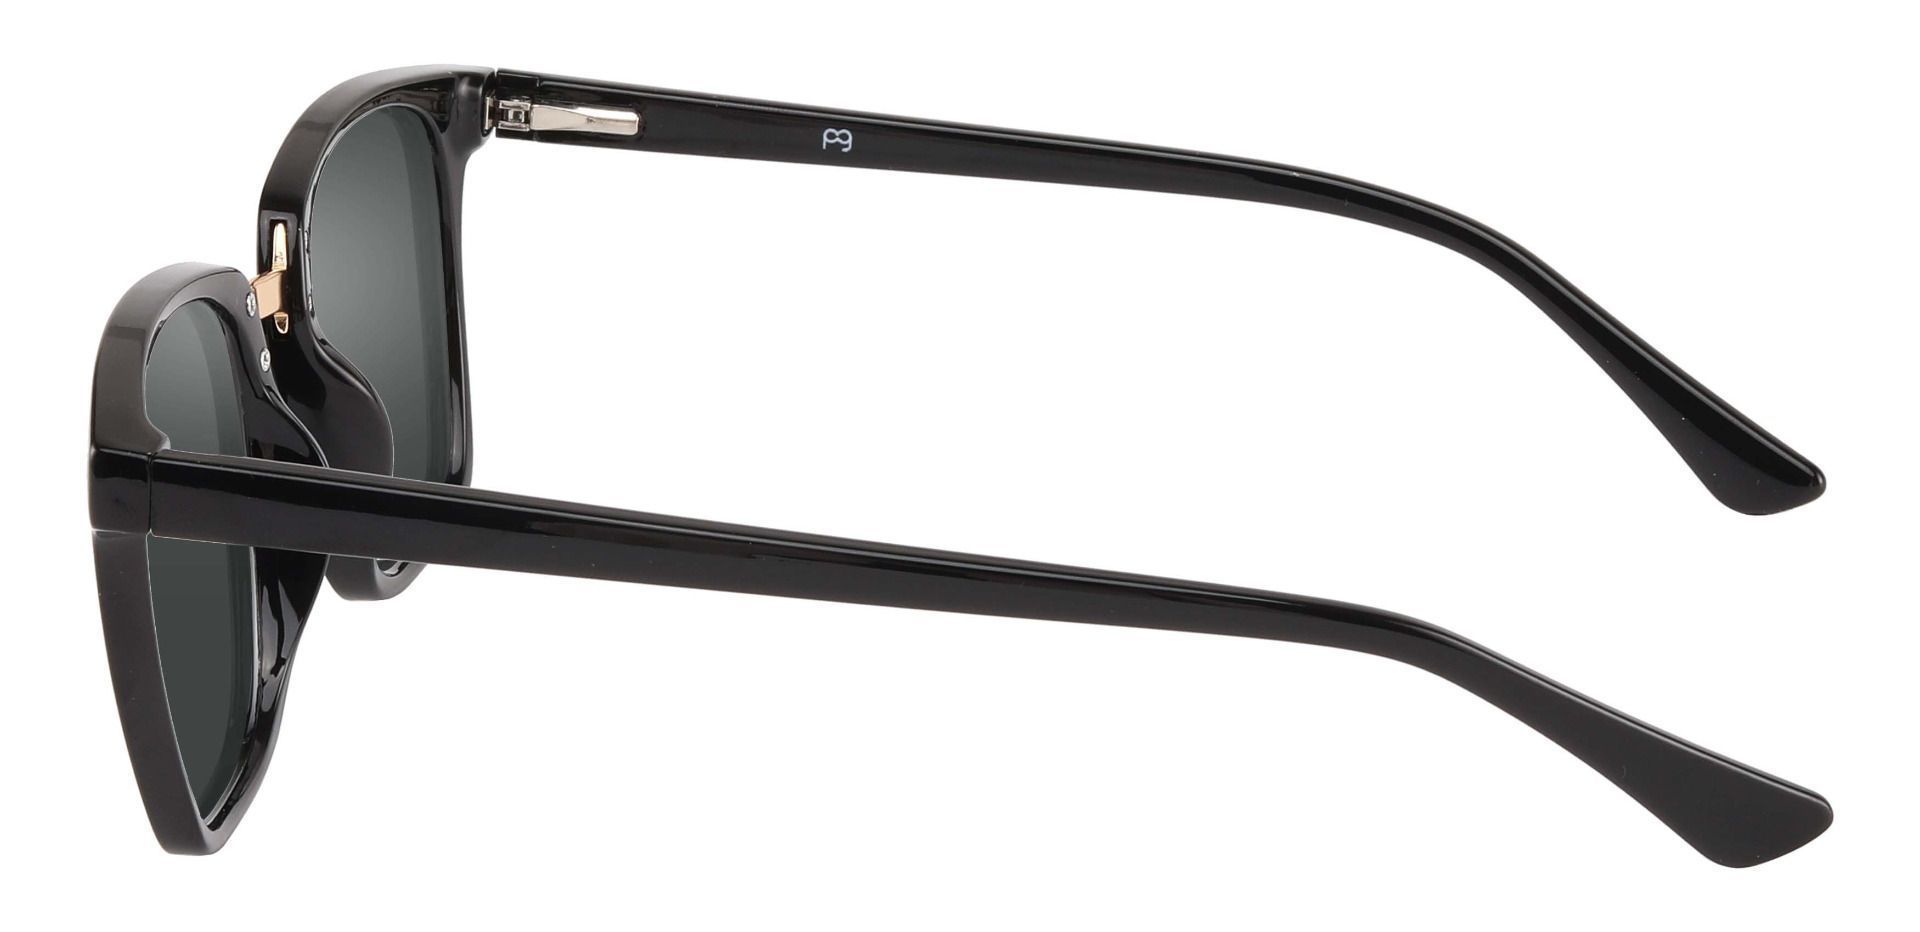 Delta Square Prescription Sunglasses - Black Frame With Gray Lenses